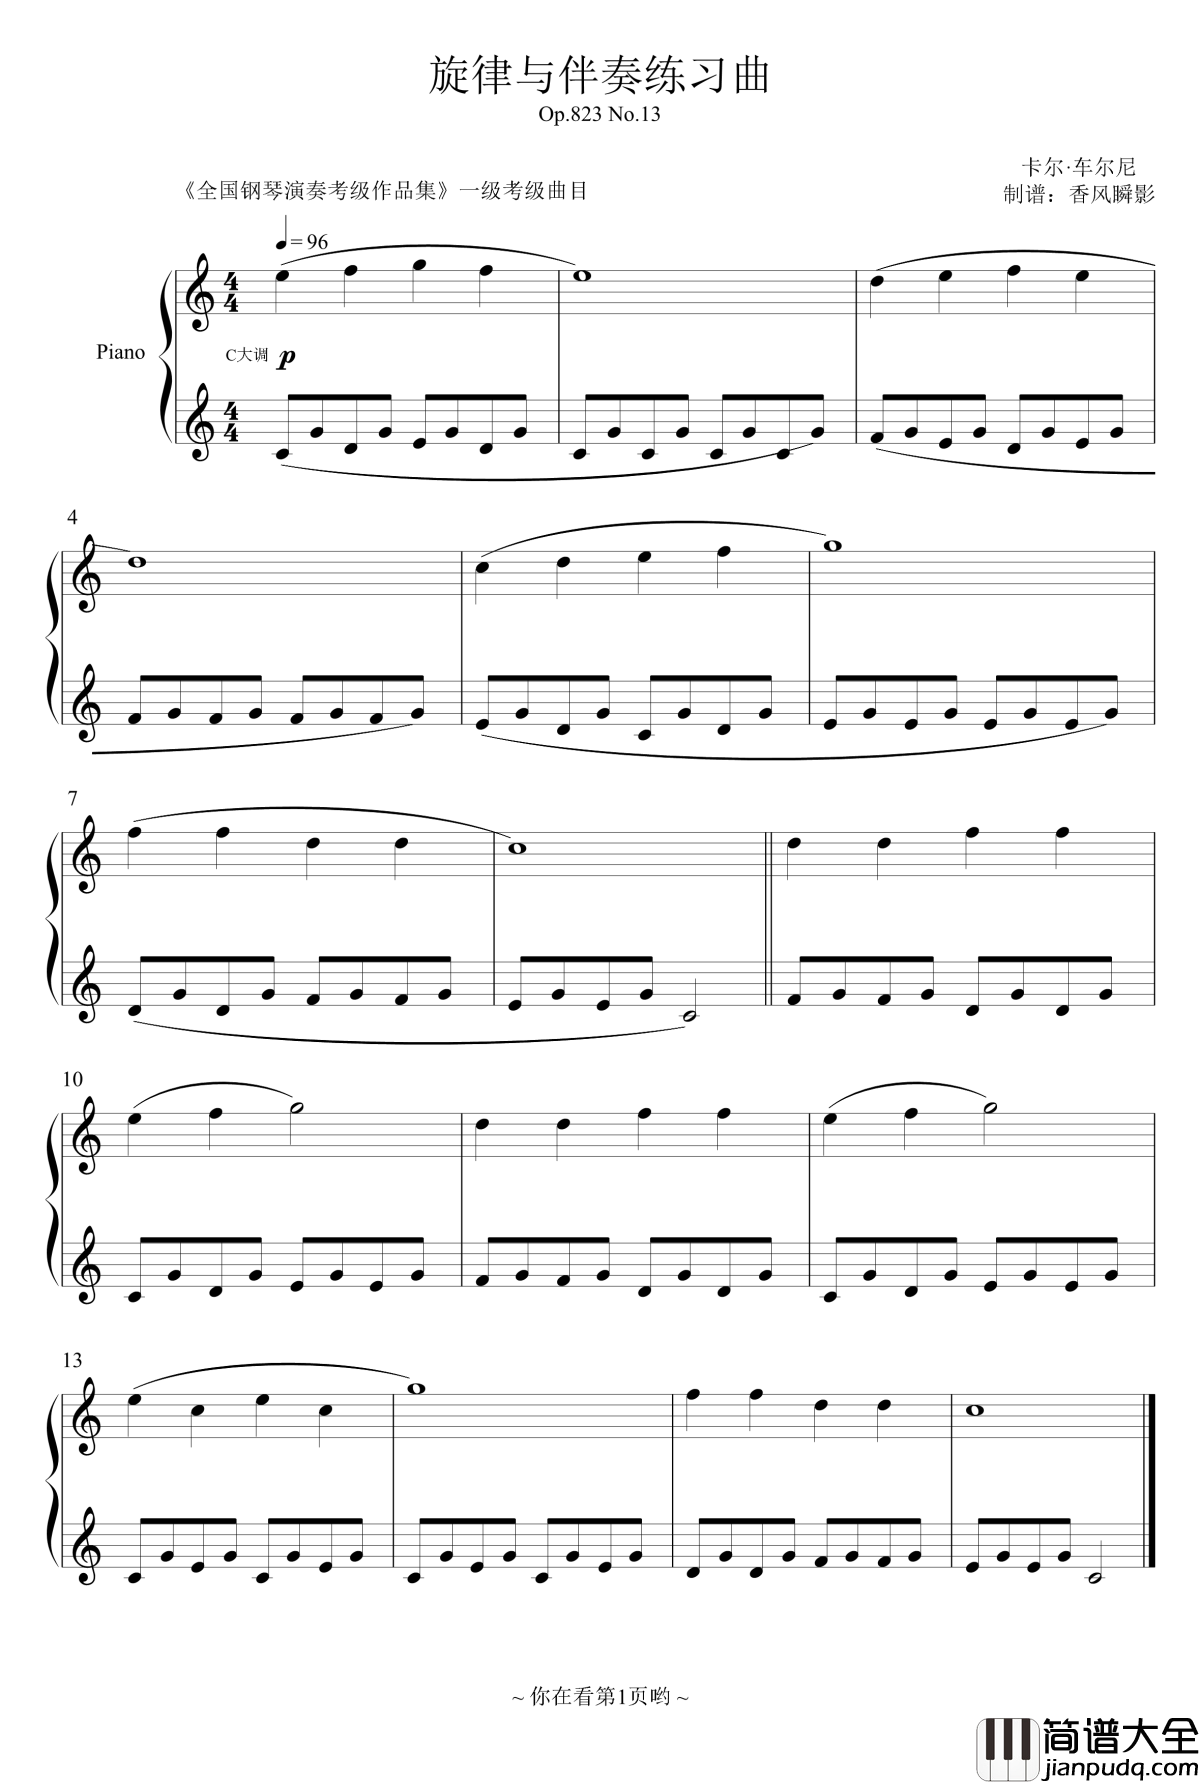 旋律与伴奏练习曲钢琴谱_Op.823_No.13_车尔尼_Czerny